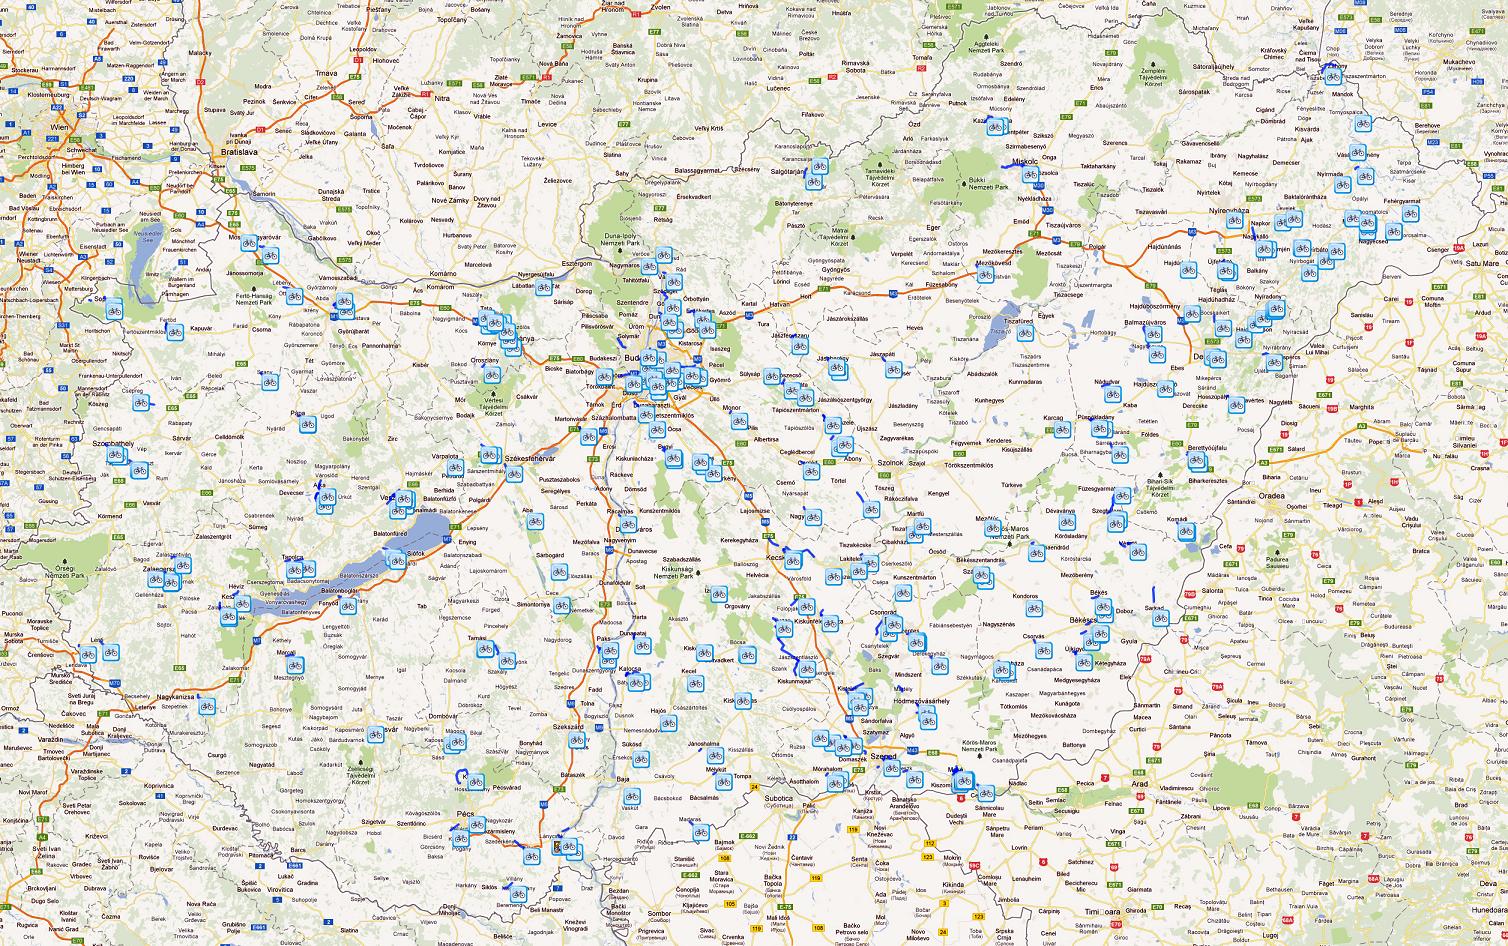 magyarország kerékpárutak térkép Magyarország kerékpáros térképe   Biciklopédia magyarország kerékpárutak térkép